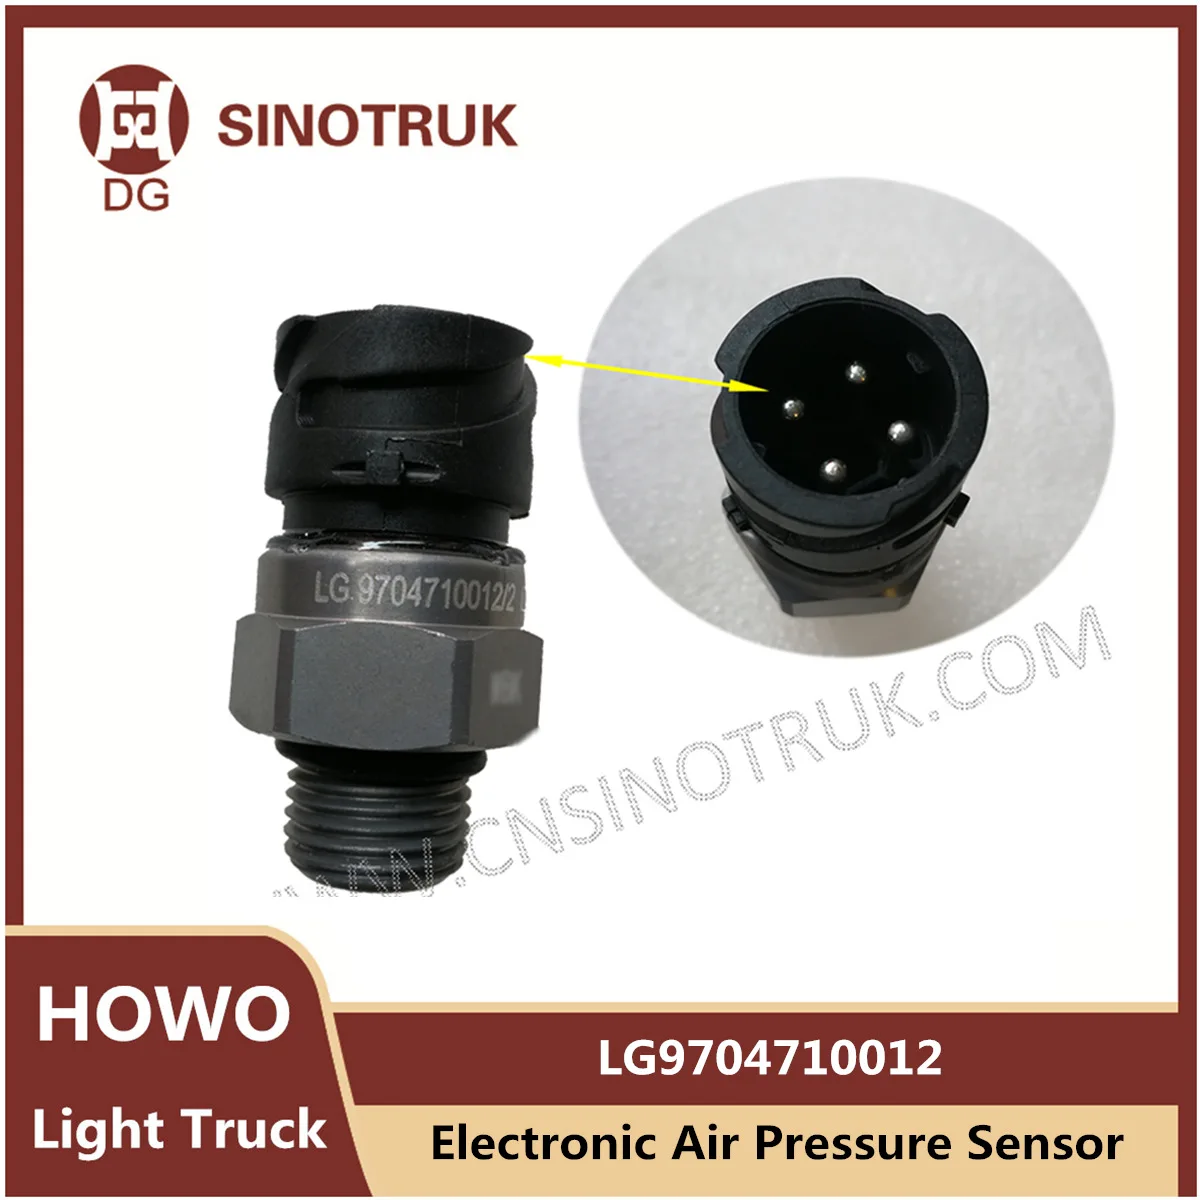 

Электронный датчик давления воздуха LG9704710012 для Sinotruk Howo светильник, индукционный 4 вилки для грузовиков